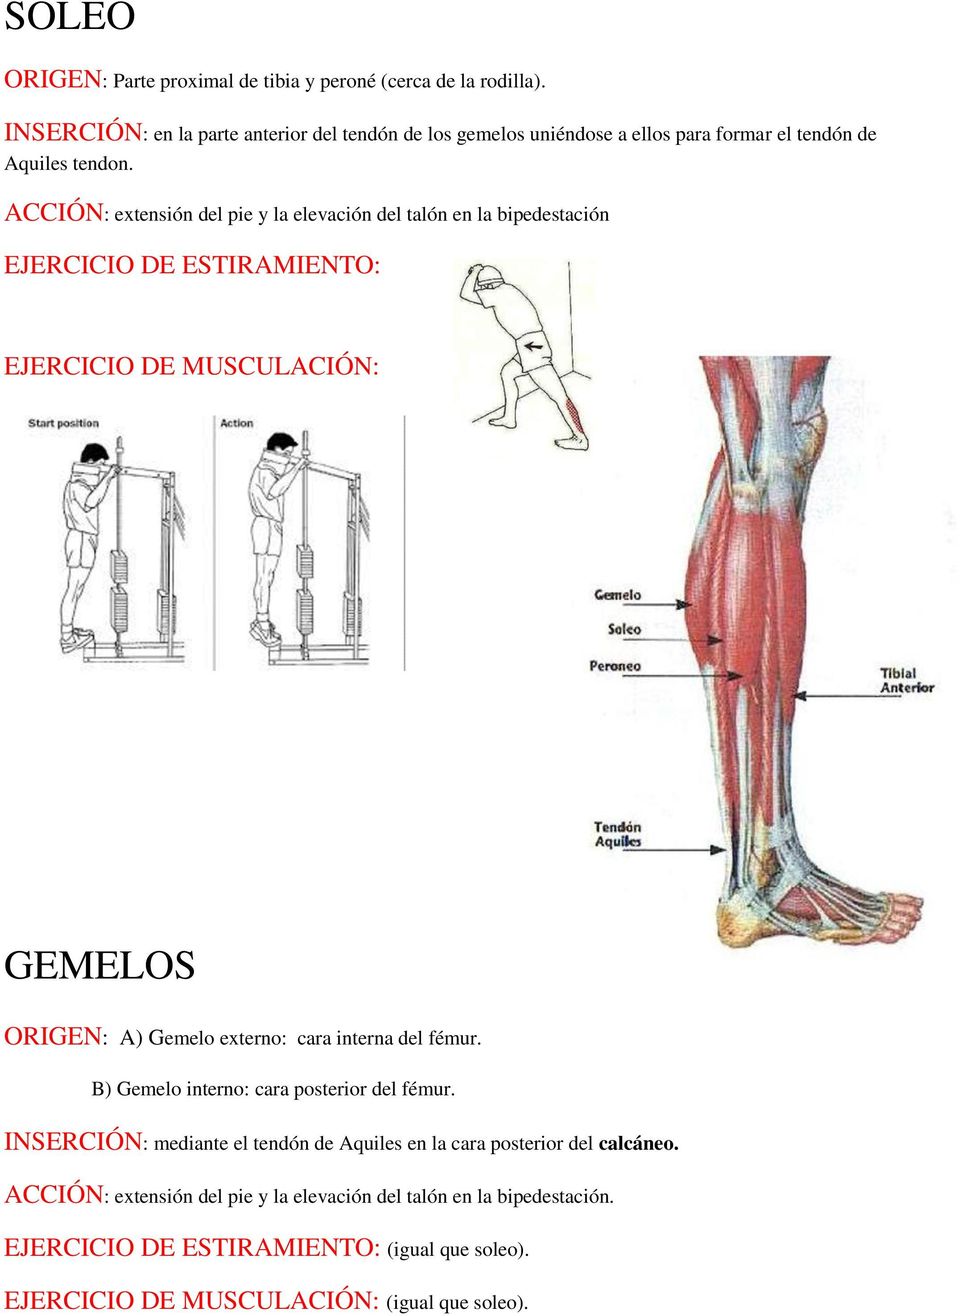 ACCIÓN: extensión del pie y la elevación del talón en la bipedestación GEMELOS ORIGEN: A) Gemelo externo: cara interna del fémur.